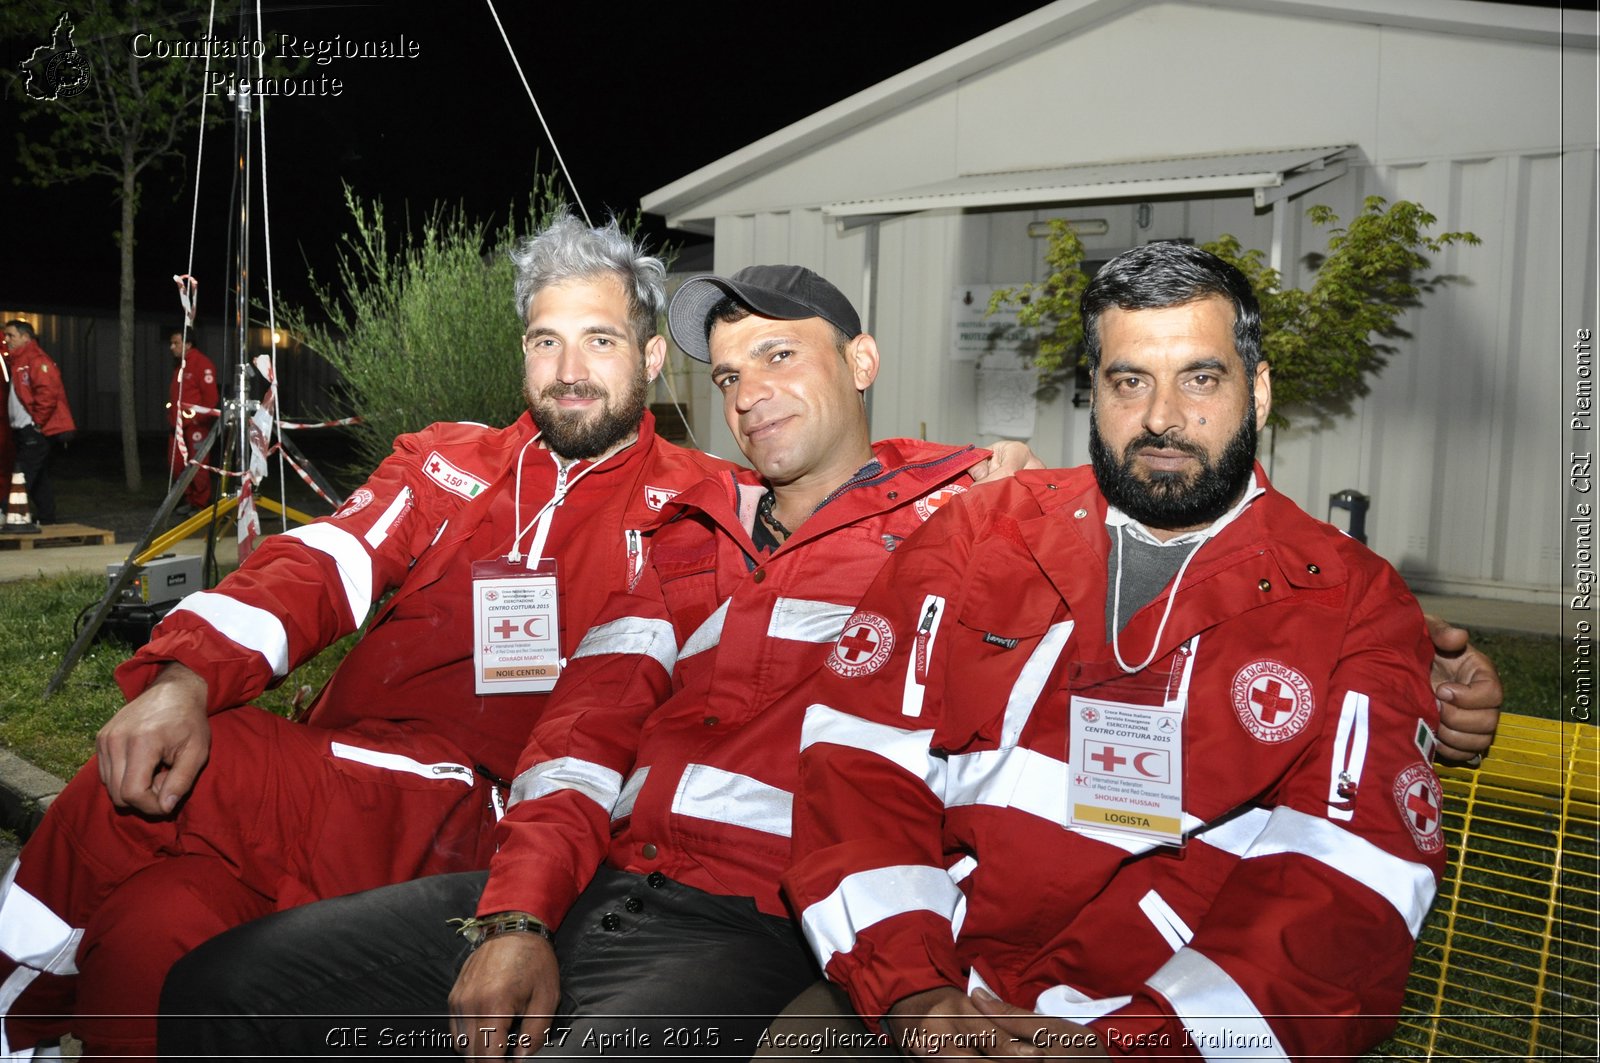 CIE Settimo T.se 17 Aprile 2015 - Accoglienza Migranti - Croce Rossa Italiana- Comitato Regionale del Piemonte